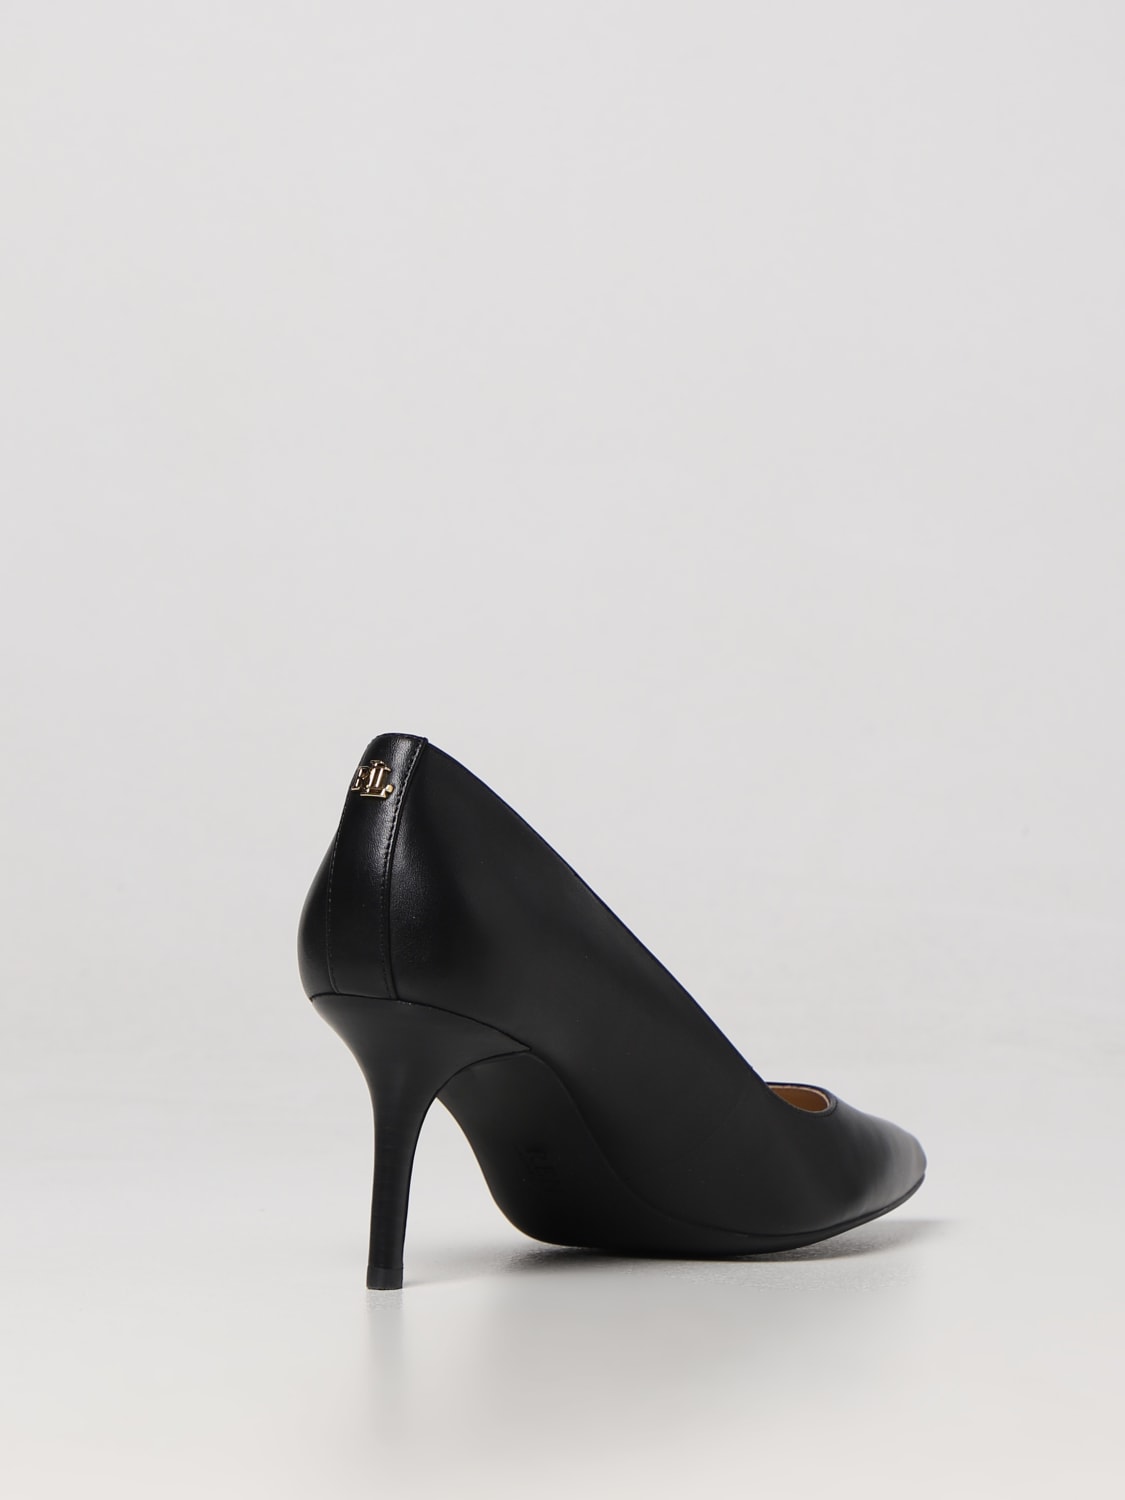 LAUREN RALPH LAUREN: Zapatos de salón para Negro | Zapatos De SalÓN Lauren Ralph Lauren 802723236 línea GIGLIO.COM